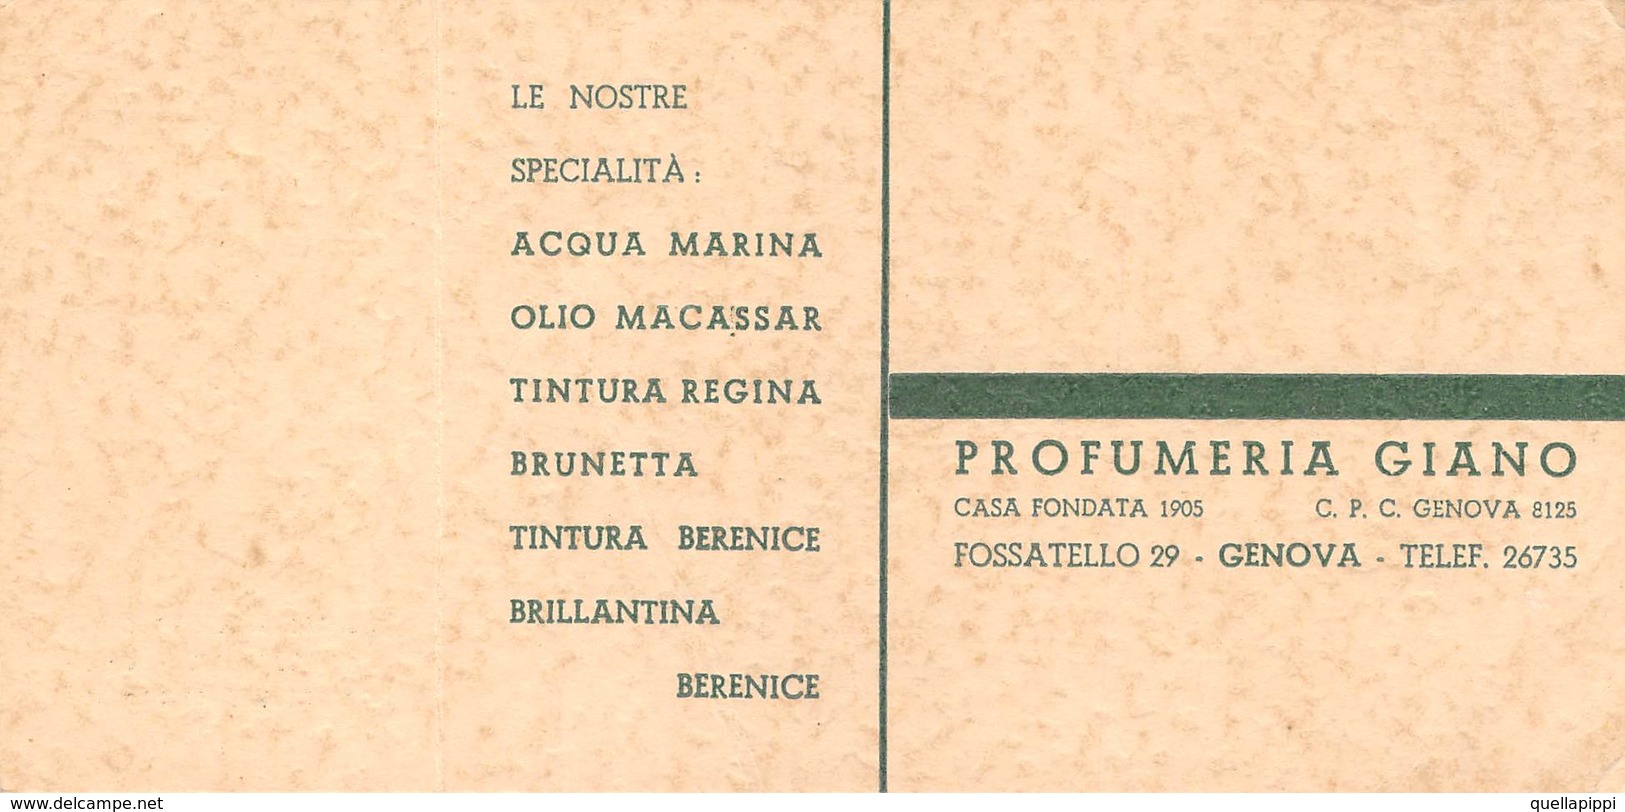 08012 "PROFUMERIA GIANO FONDATA 1905 - GENOVA" CART. DA VISISTA ORIG. 1950 CIRCA - Tarjetas De Visita